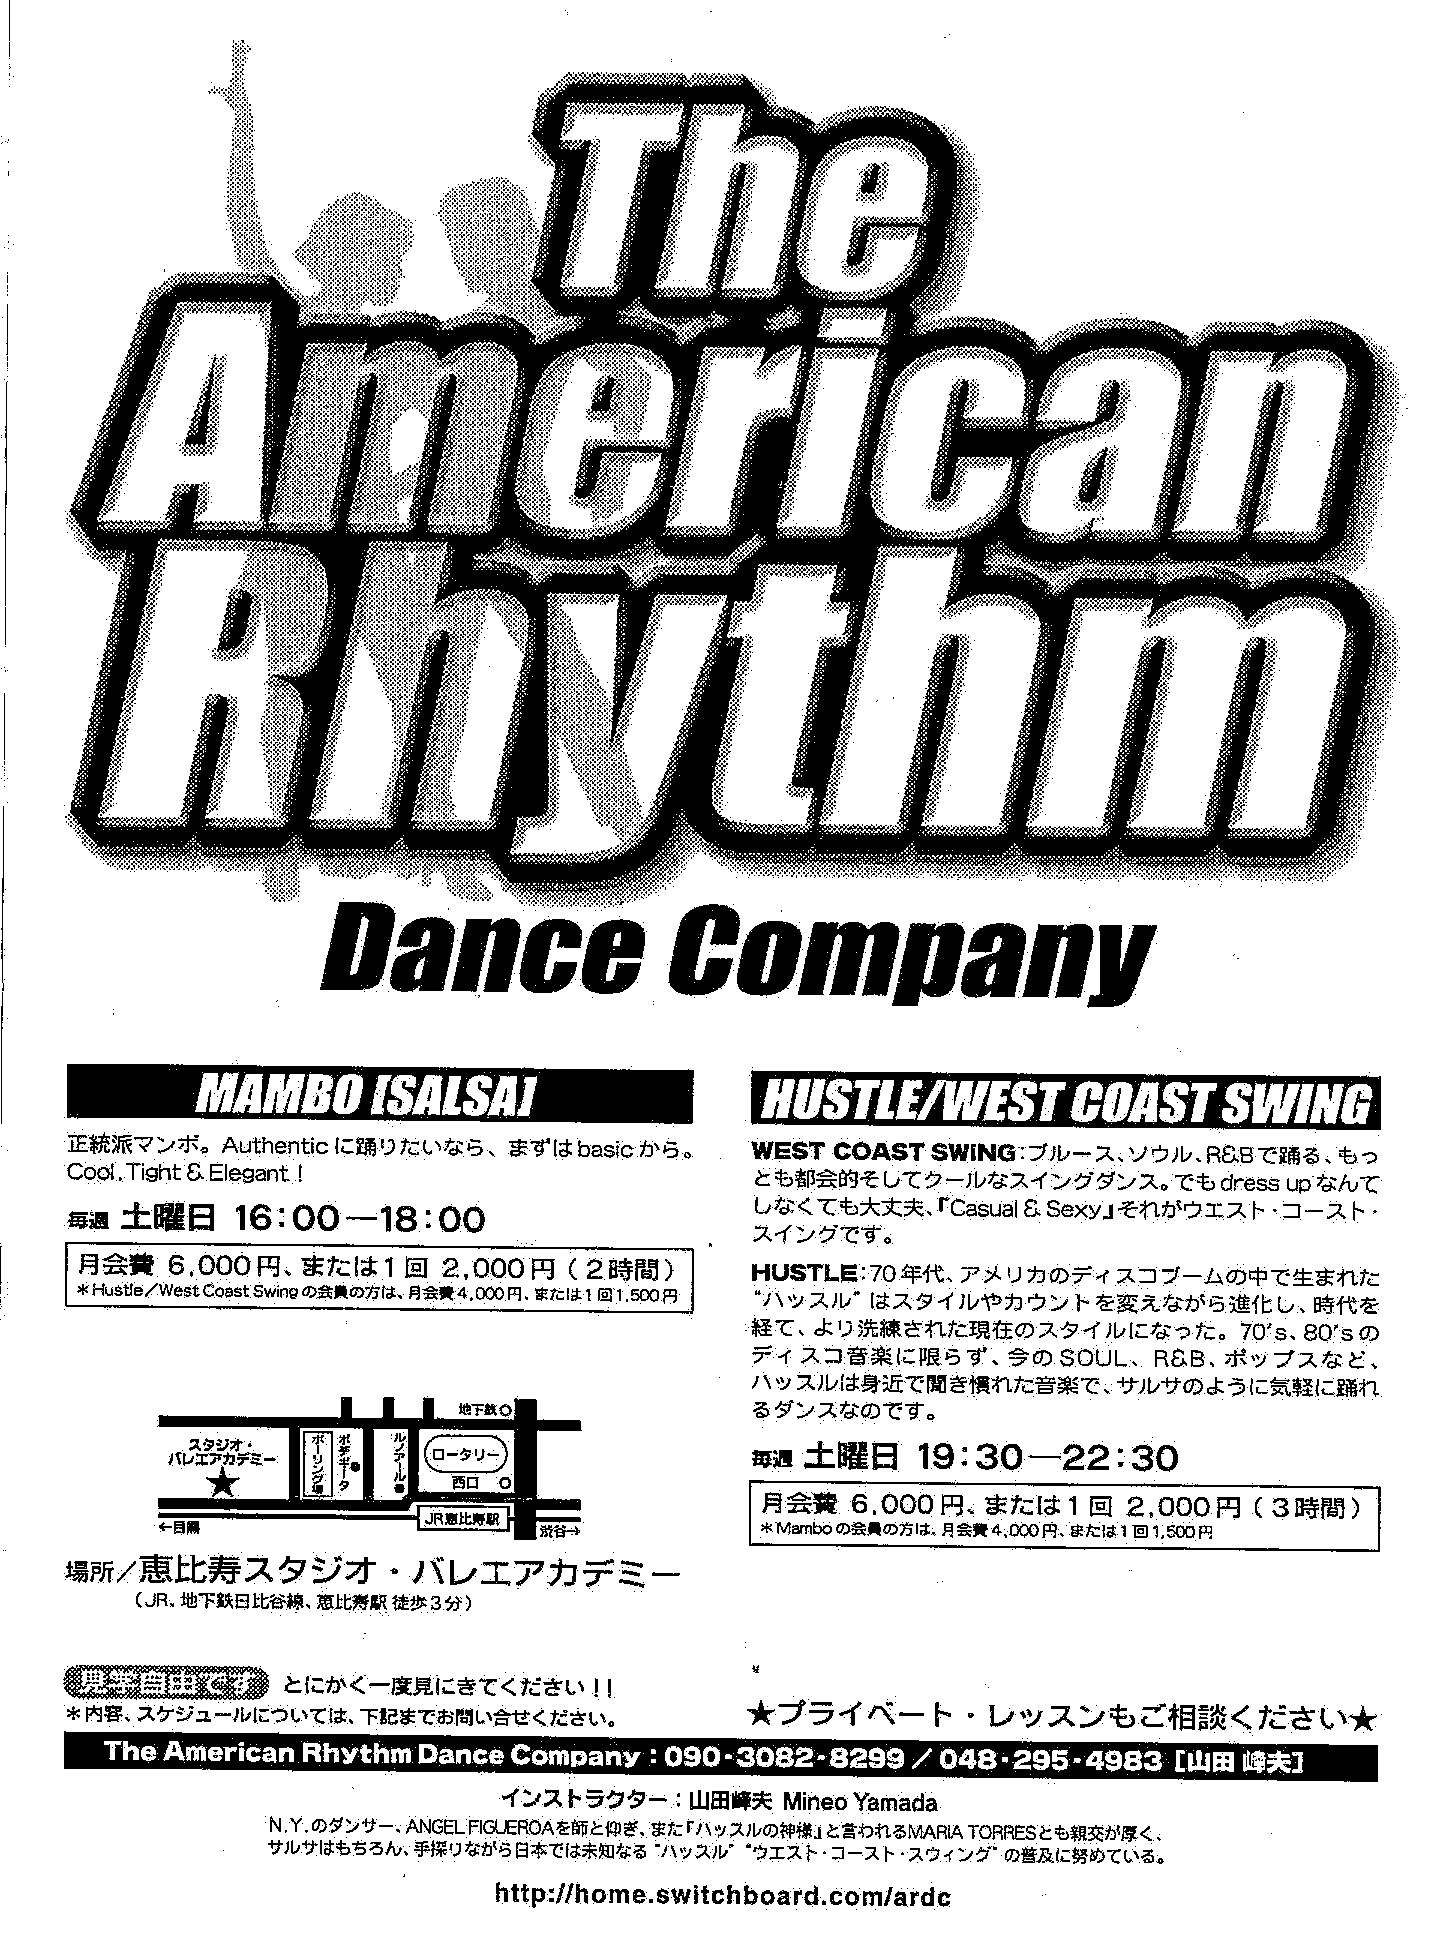 The American Rhythm Dance Company